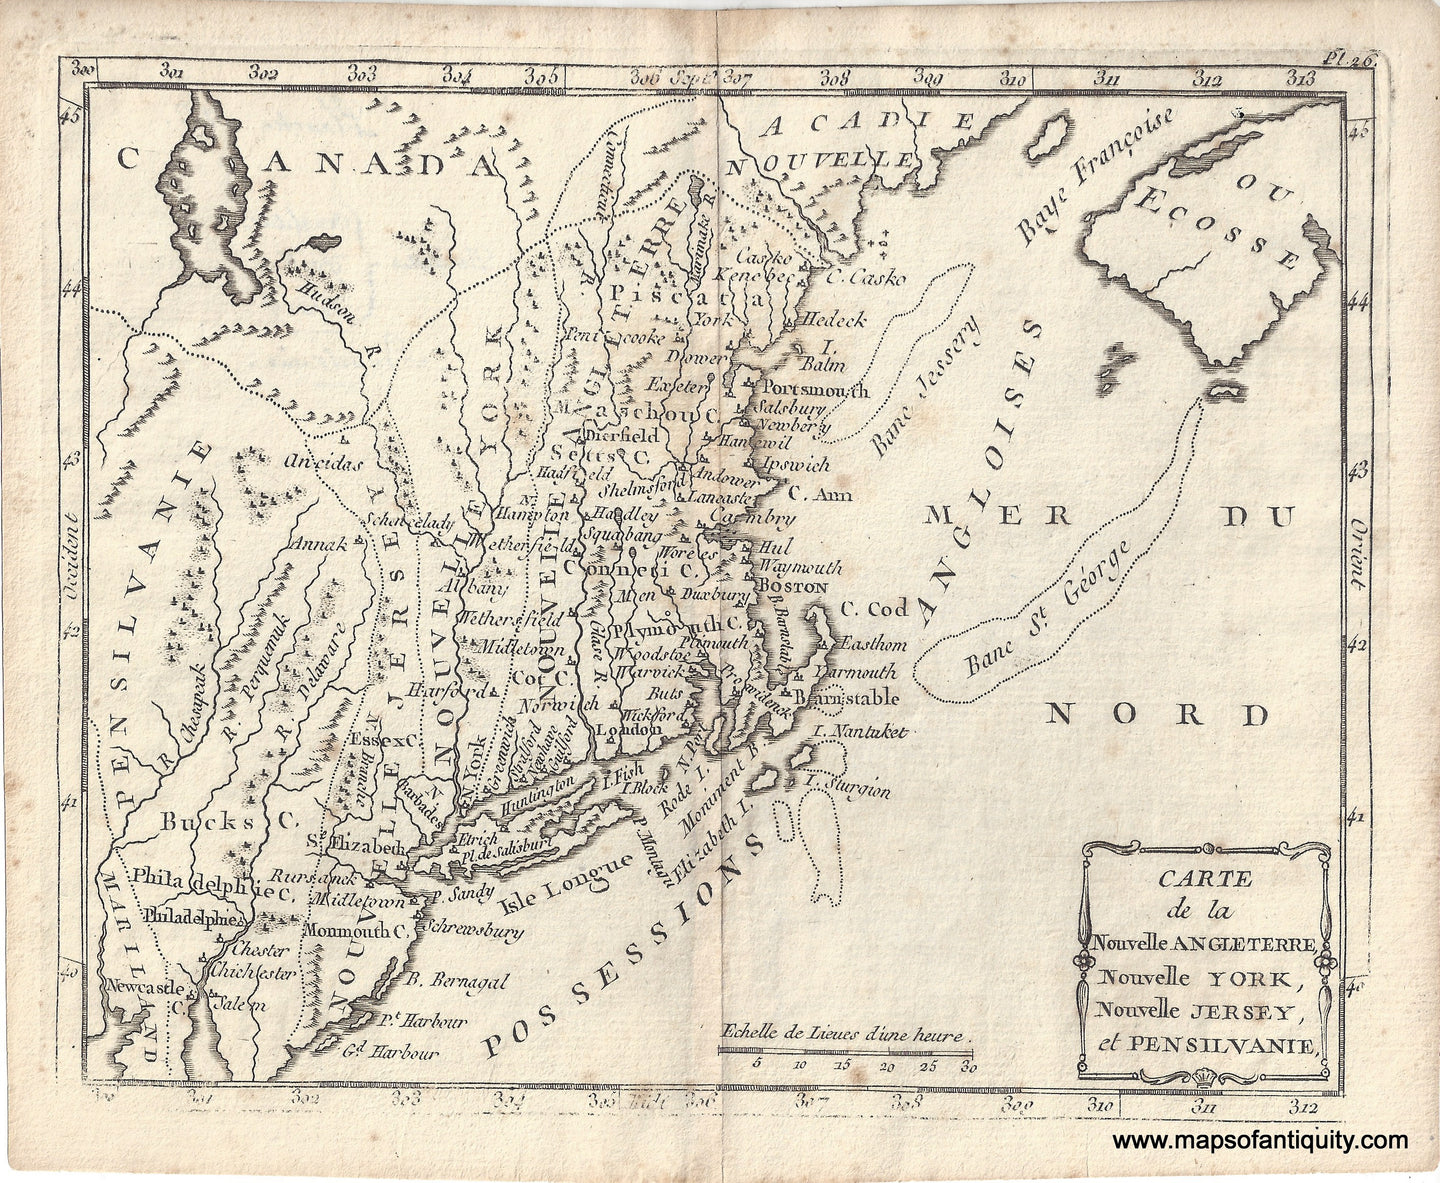 1811 - Carte de la Nouvelle Angleterre, Nouvelle York, Nouvelle Jersey, et Pensilvanie - Antique Map